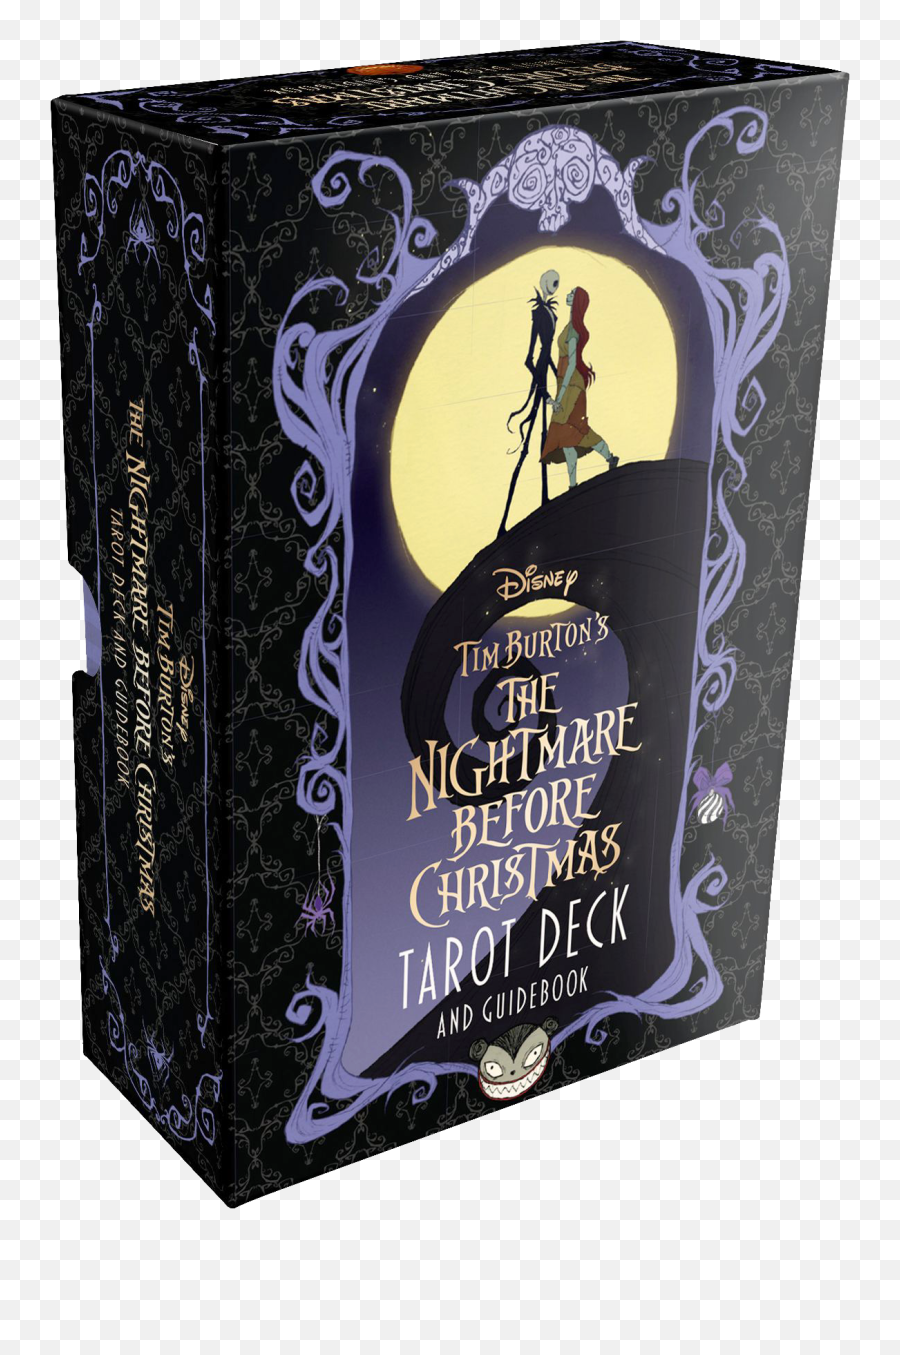 The Nightmare Before Christmas Tarot U2013 Abigail Larson - Tarot Deck Nightmare Before Christmas Png,Jack Skellington Icon